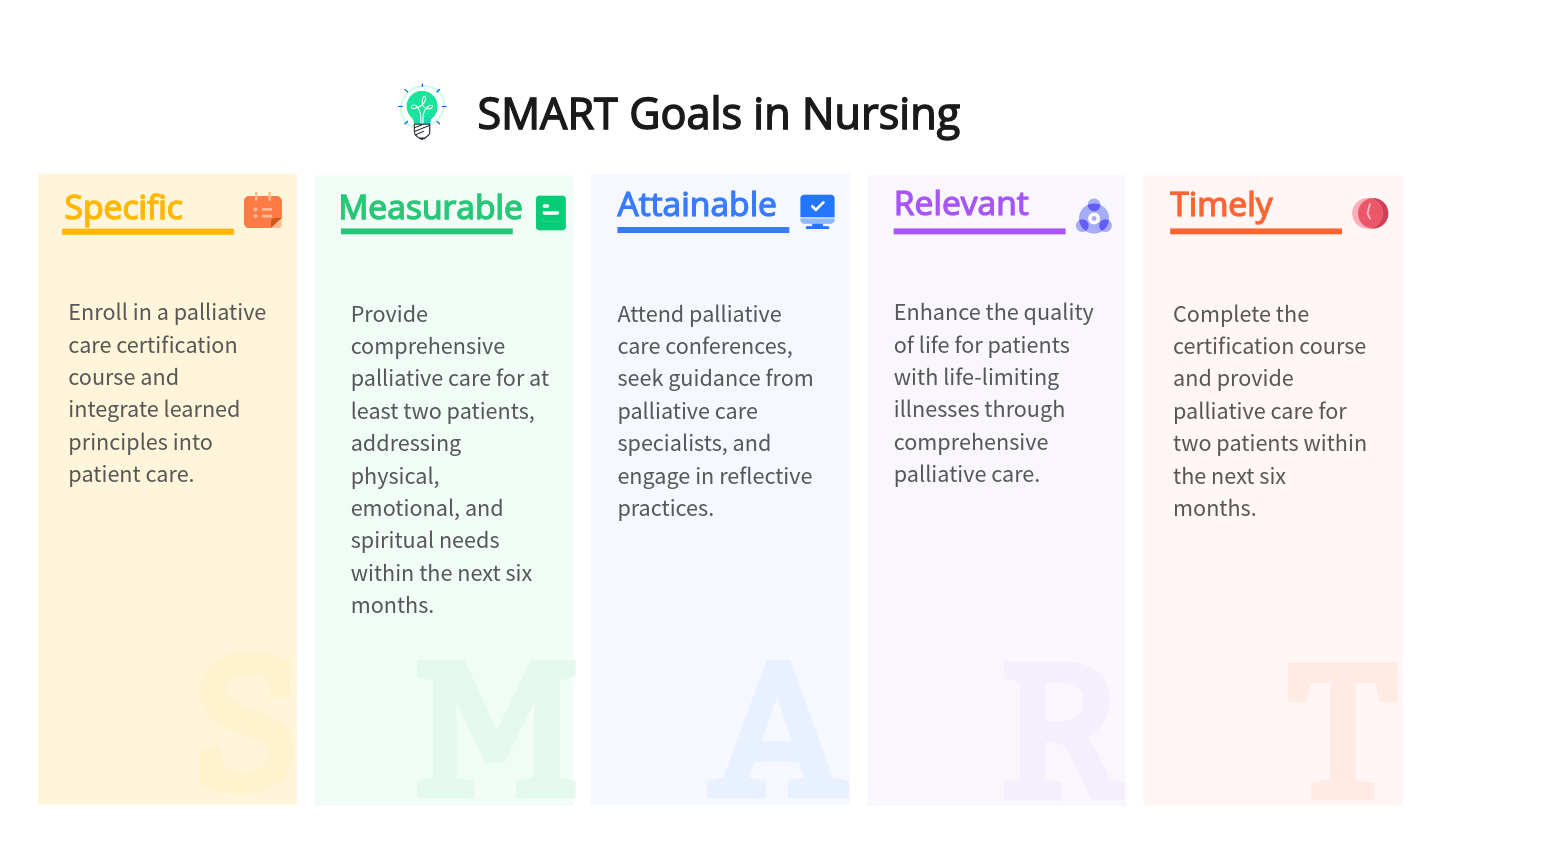 SMART Goals in Nursing - Care Options for Kids